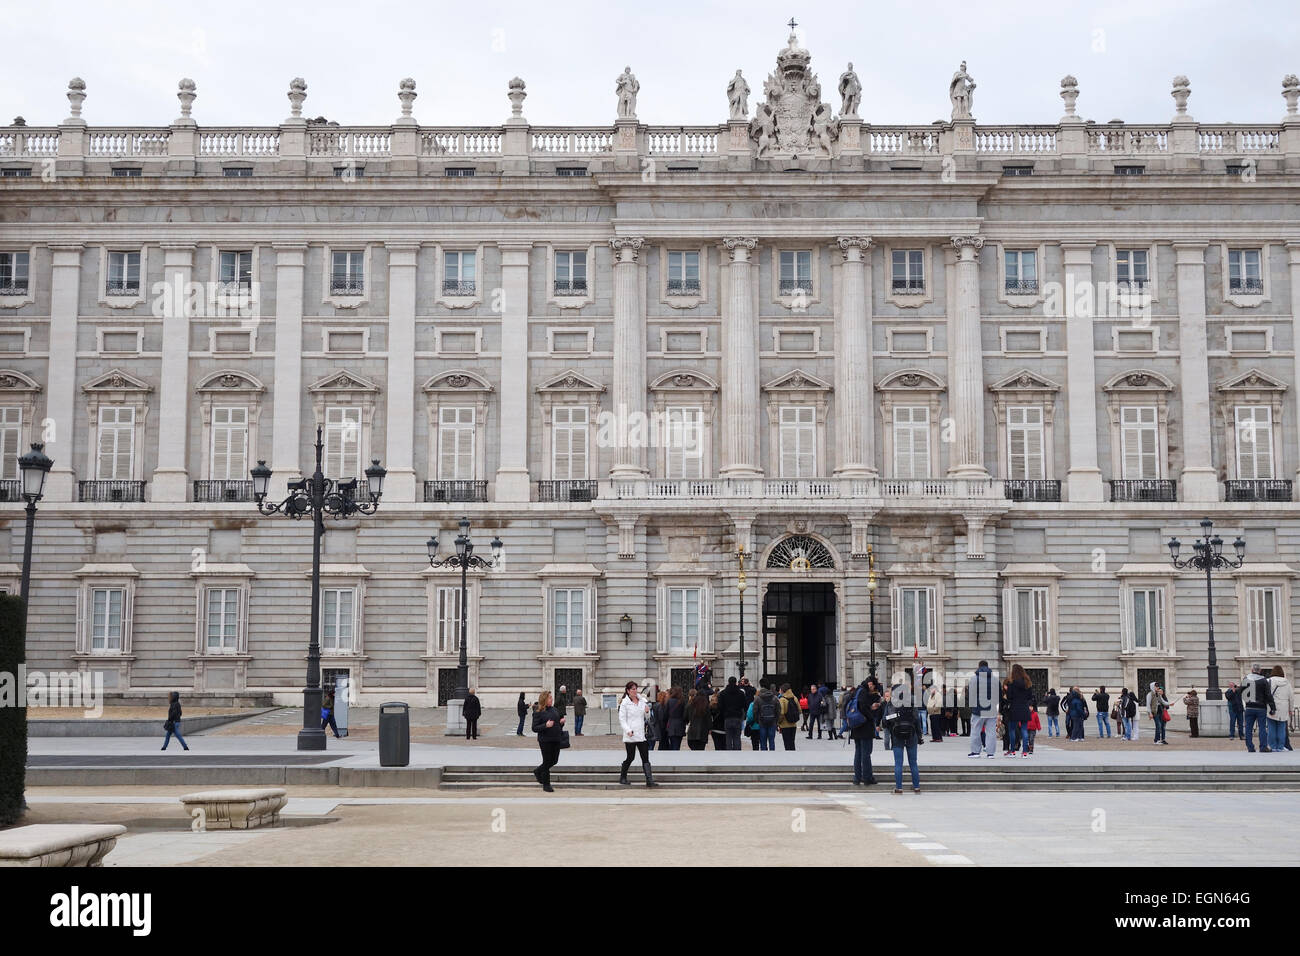 Palacio Real de Madrid, Königspalast, offizielle Residenz des spanischen Königshauses, Madrid, Spanien. Stockfoto